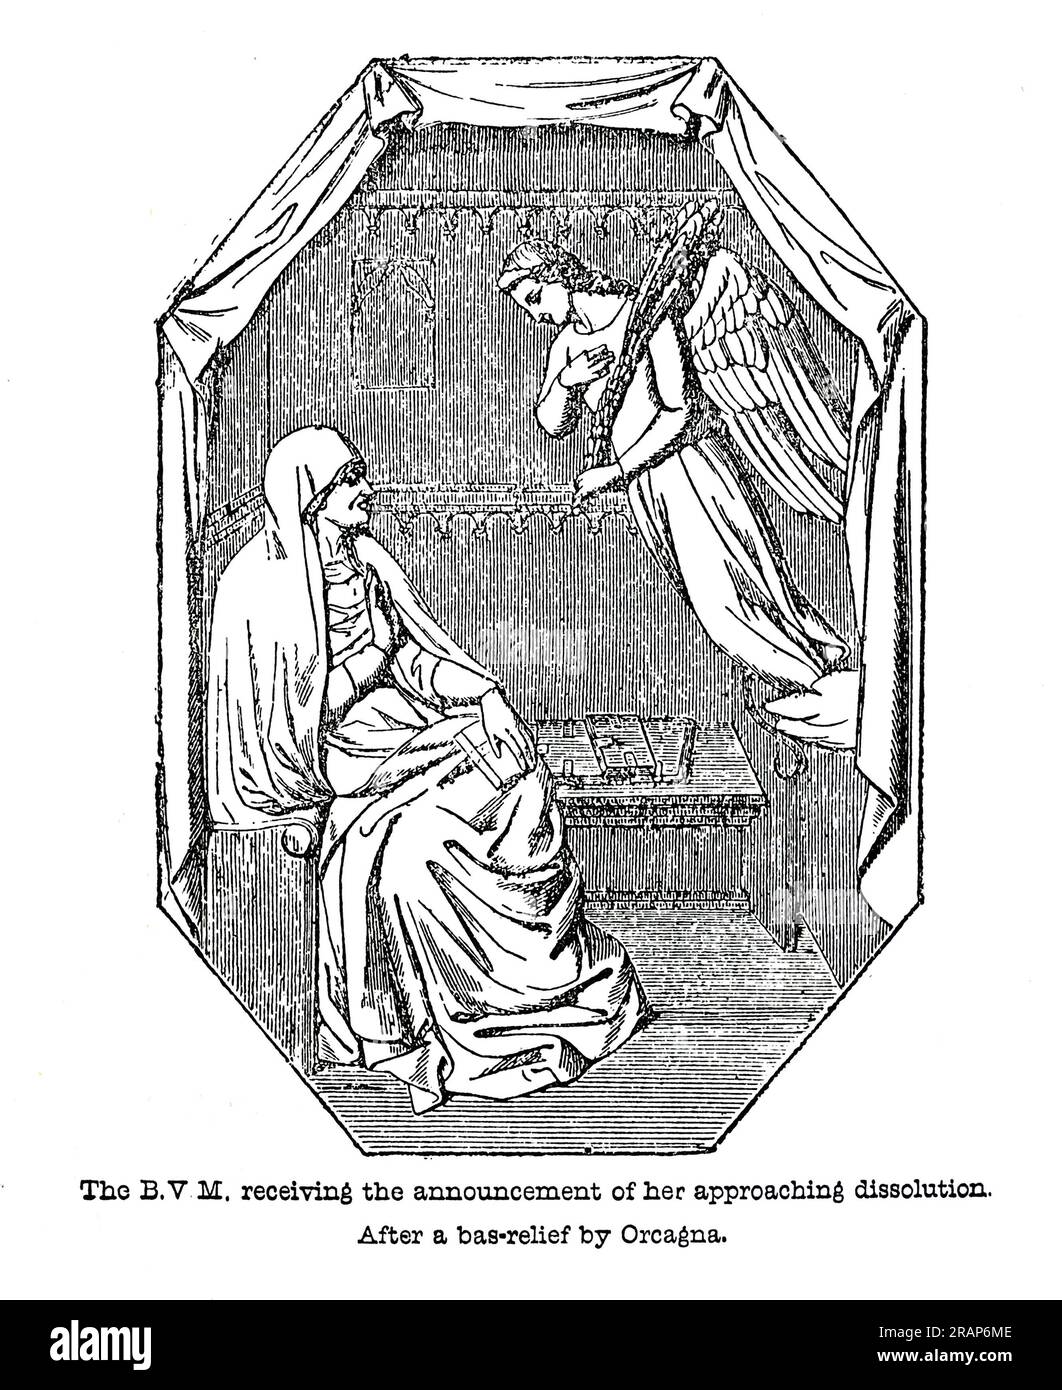 Die Heilige Jungfrau Maria erhielt die Ankündigung ihrer bevorstehenden Auflösung. Nach einer Erleichterung durch Orcagna. Gravur aus dem Leben der Heiligen von Sabin Baring-Gould. Stockfoto